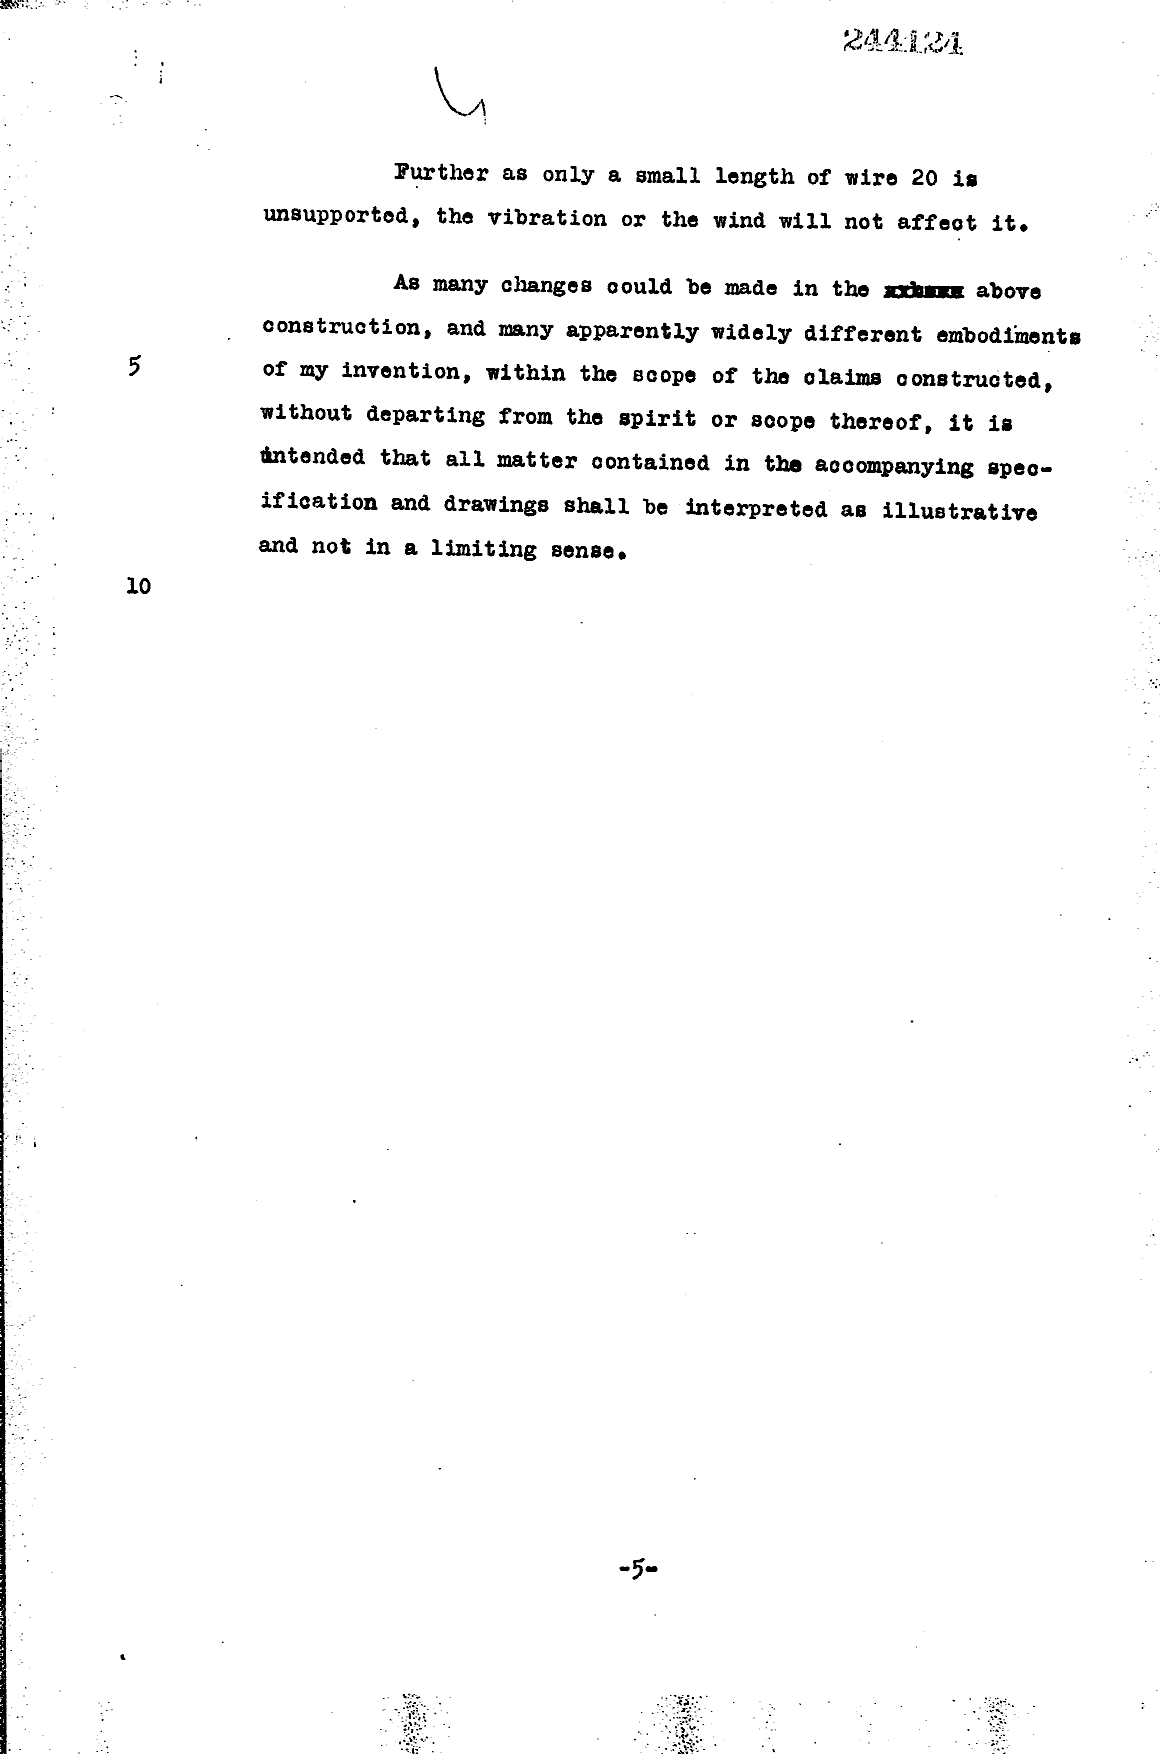 Canadian Patent Document 244124. Description 19951104. Image 4 of 4